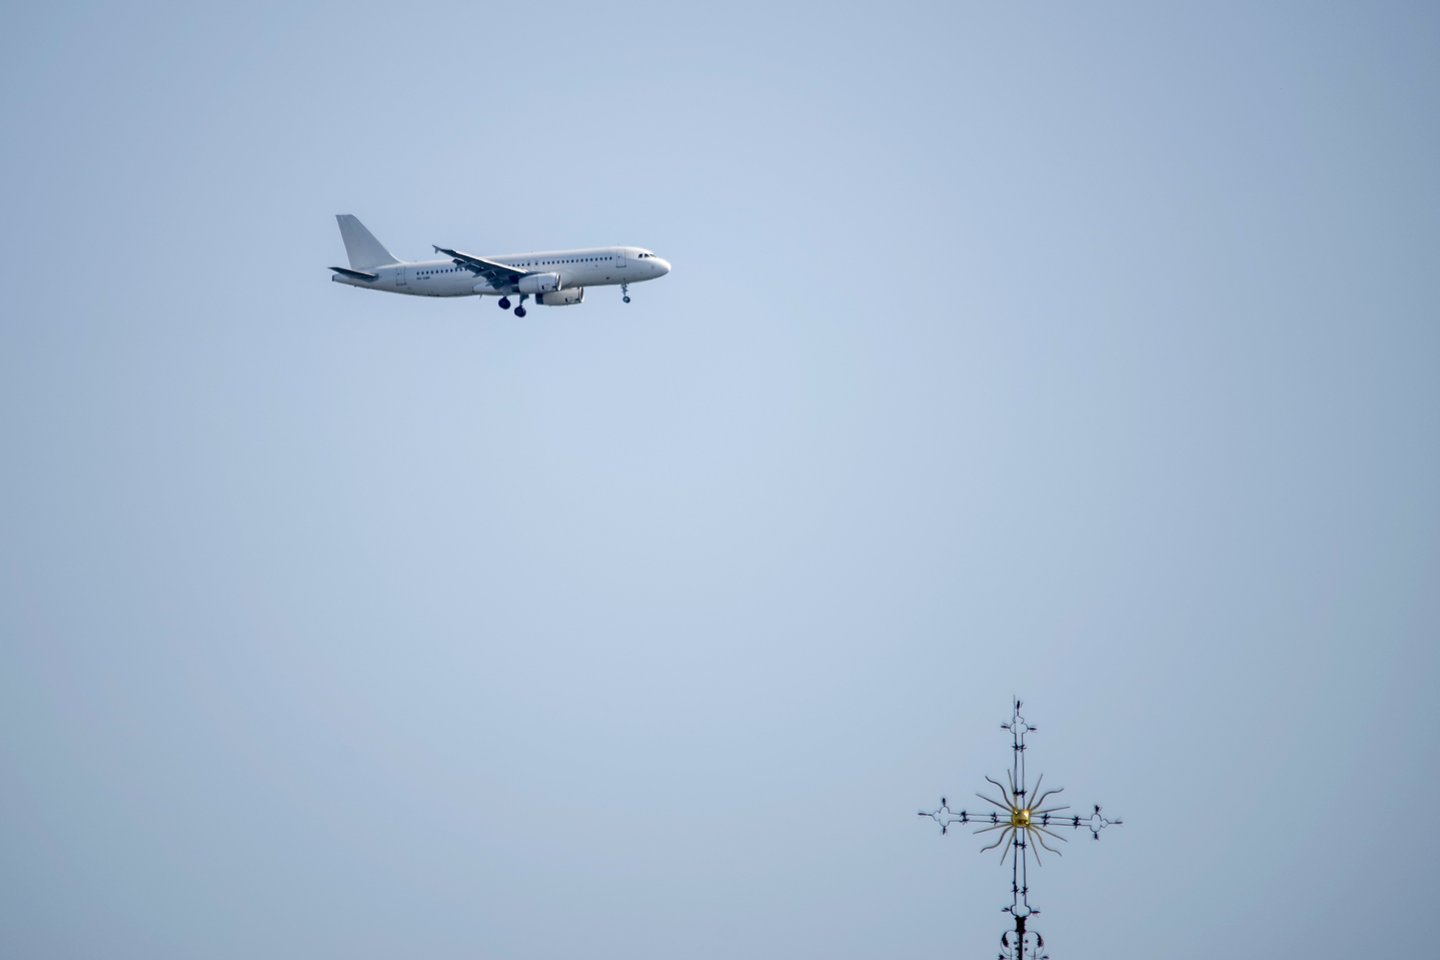 Lėktuvas<br>V.Ščiavinsko nuotr.